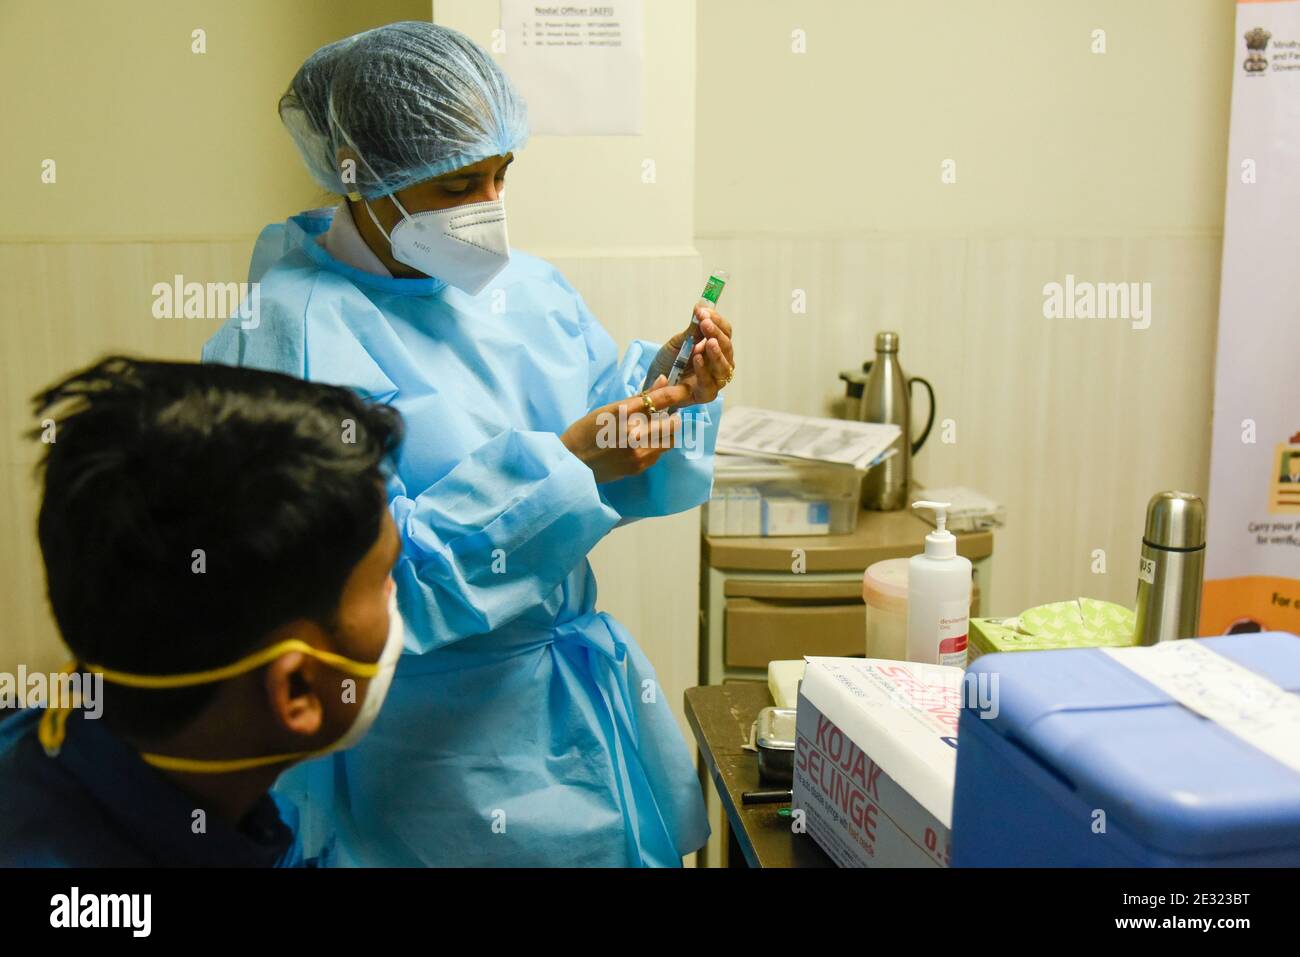 Neu Delhi, Indien. Januar 2021. Während der Impfkampagne gegen die Coronavirus-Krankheit (COVID-19) im Primus Super Specialty Hospital Hospital in New Delhi, Indien, am 16. Januar 2021, füllt ein Mitarbeiter des Gesundheitswesens eine Spritze mit einer Dosis des COVID-19-Impfstoffs COVISHIELD von Oxford-AstraZeneca. Premierminister Narendra Modi hat am Samstag Indiens Impfkampagne gegen Covid-19 gestartet, die weltweit größte Impfübung gegen das neuartige Coronavirus. In einer virtuellen Ansprache würdigte Ministerpräsident Modi Wissenschaftler und Mitarbeiter des Gesundheitswesens, die an vorderster Front der Pandemie waren. Bild: David Talukdar/A Stockfoto